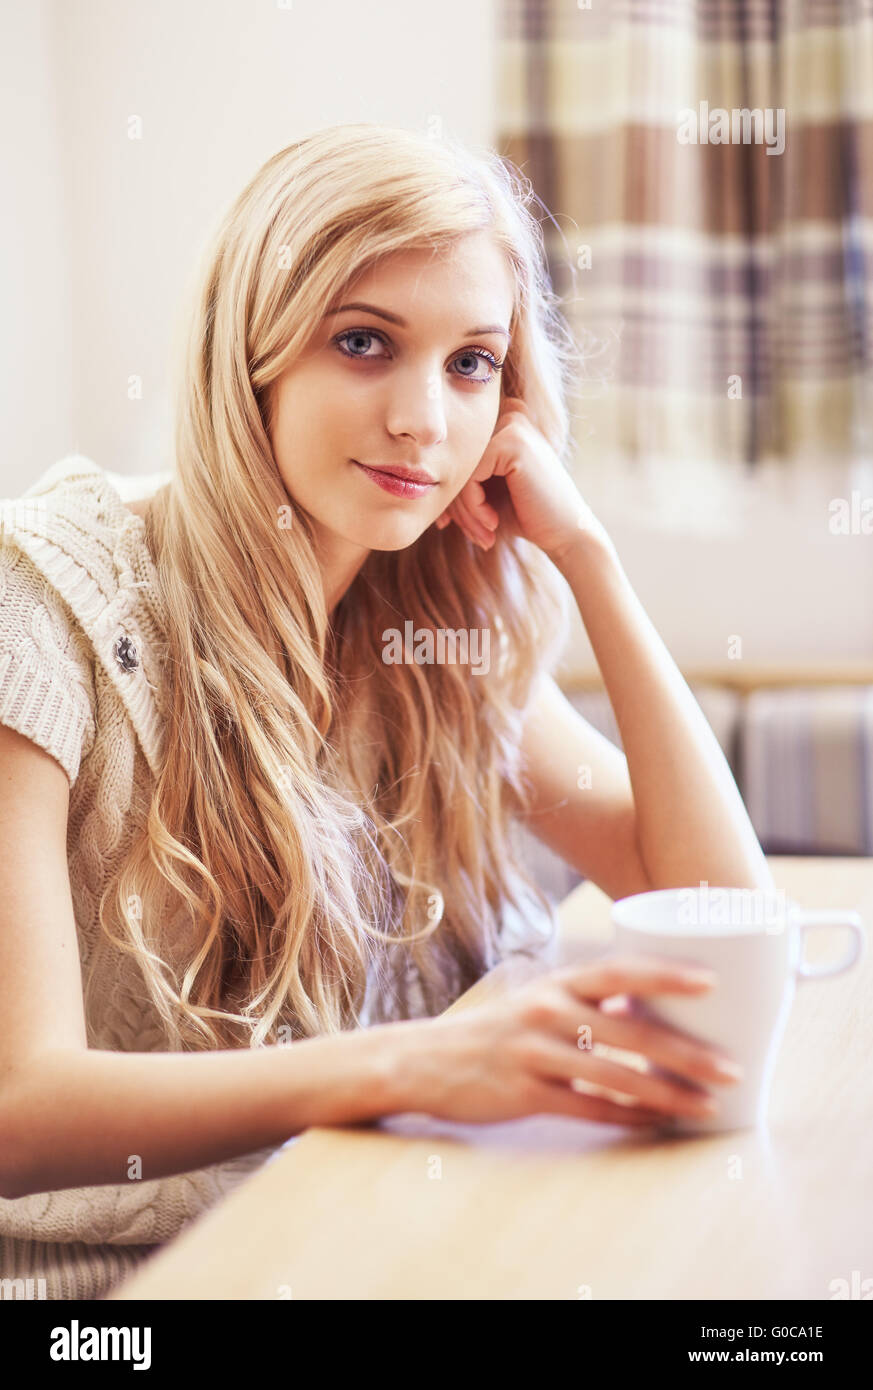 Jeune femme blonde avec une tasse à café à la table Banque D'Images